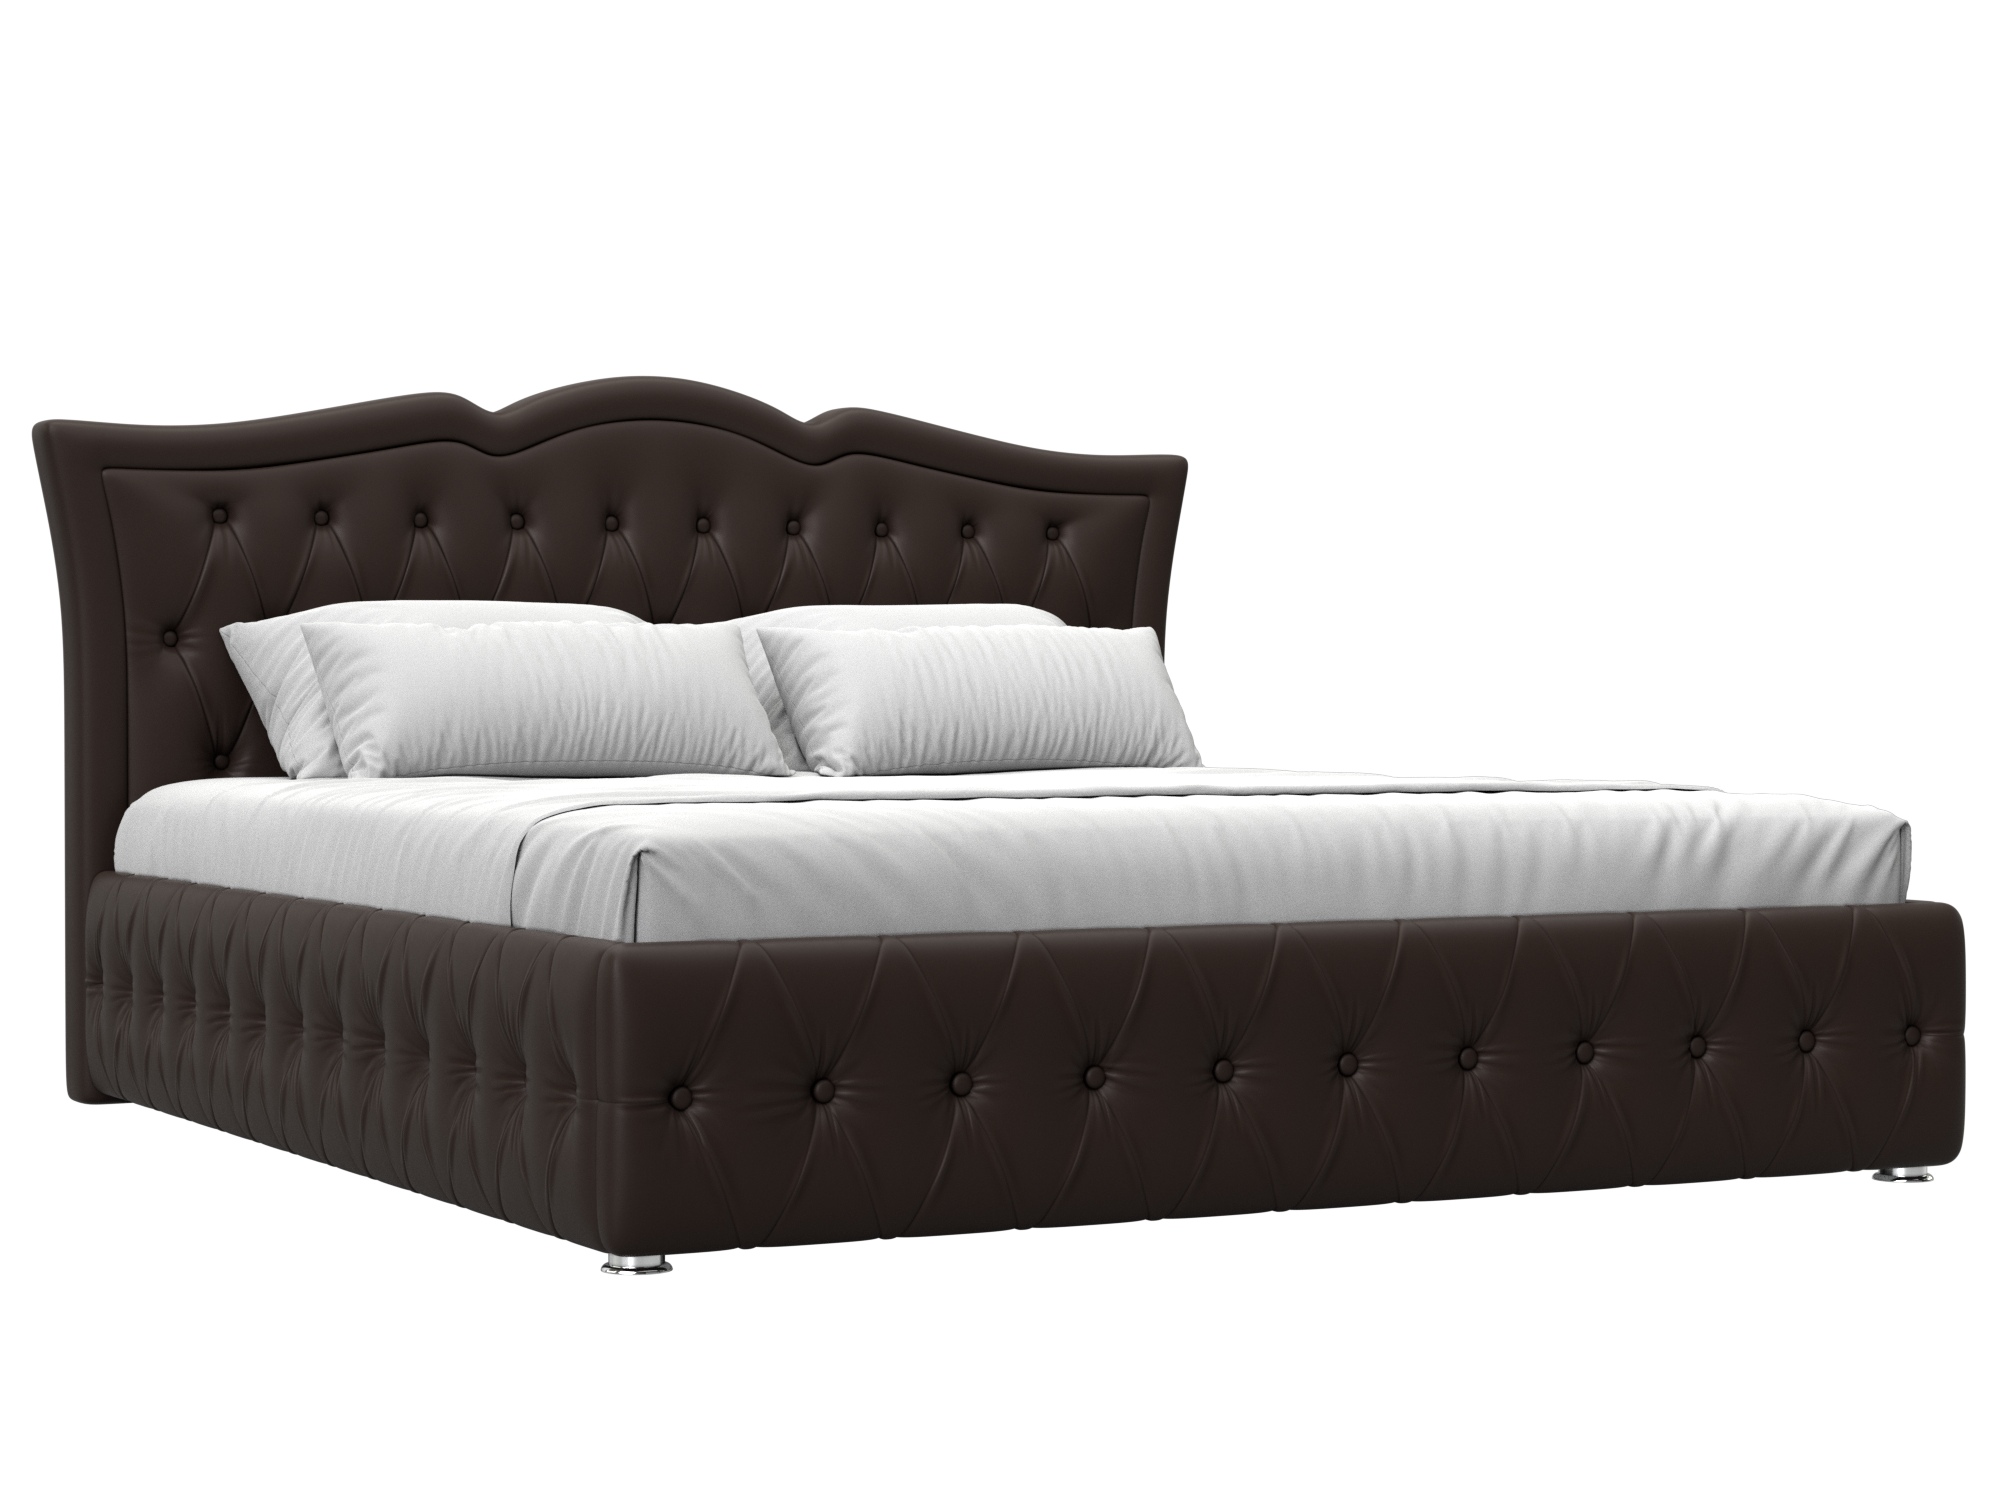 Кровать интерьерная Герда 180 (коричневый)